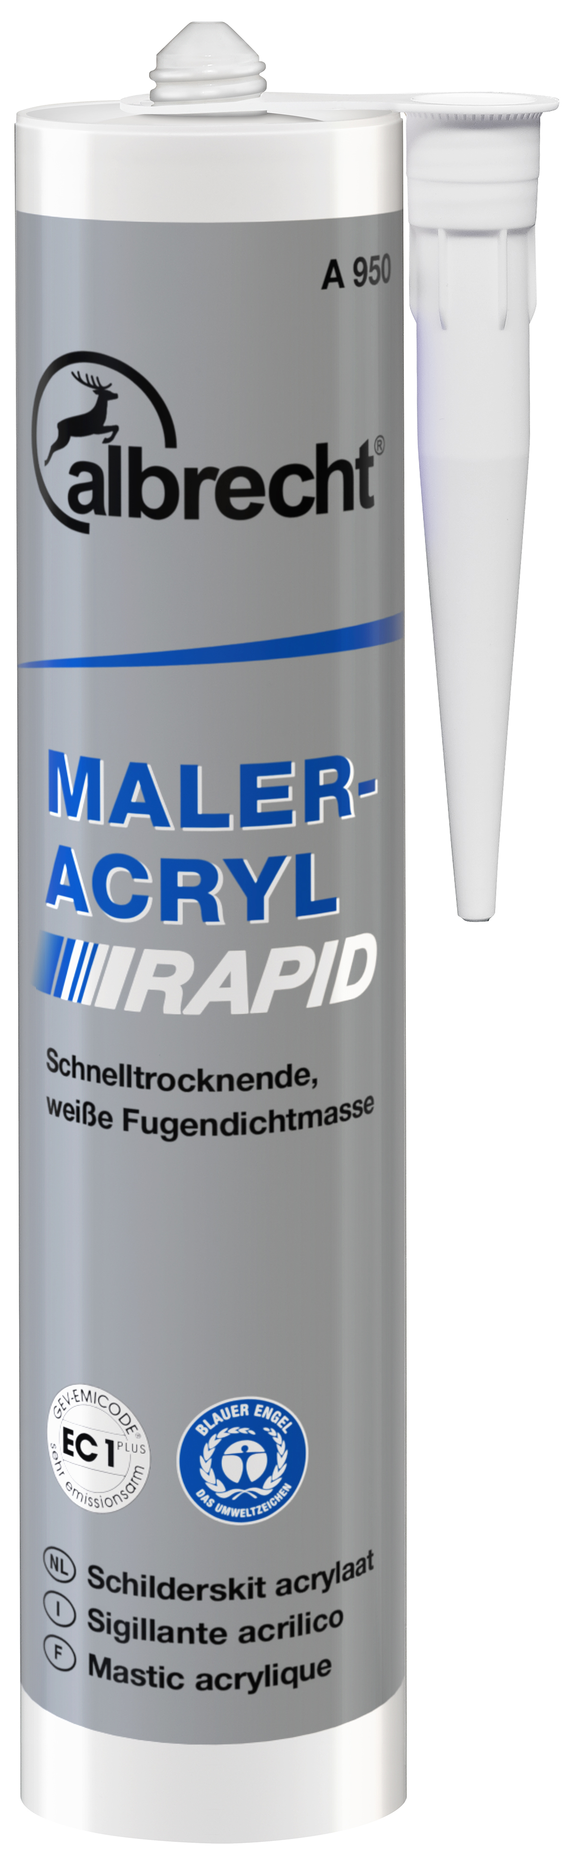 albrecht-maleracryl-a950.png 